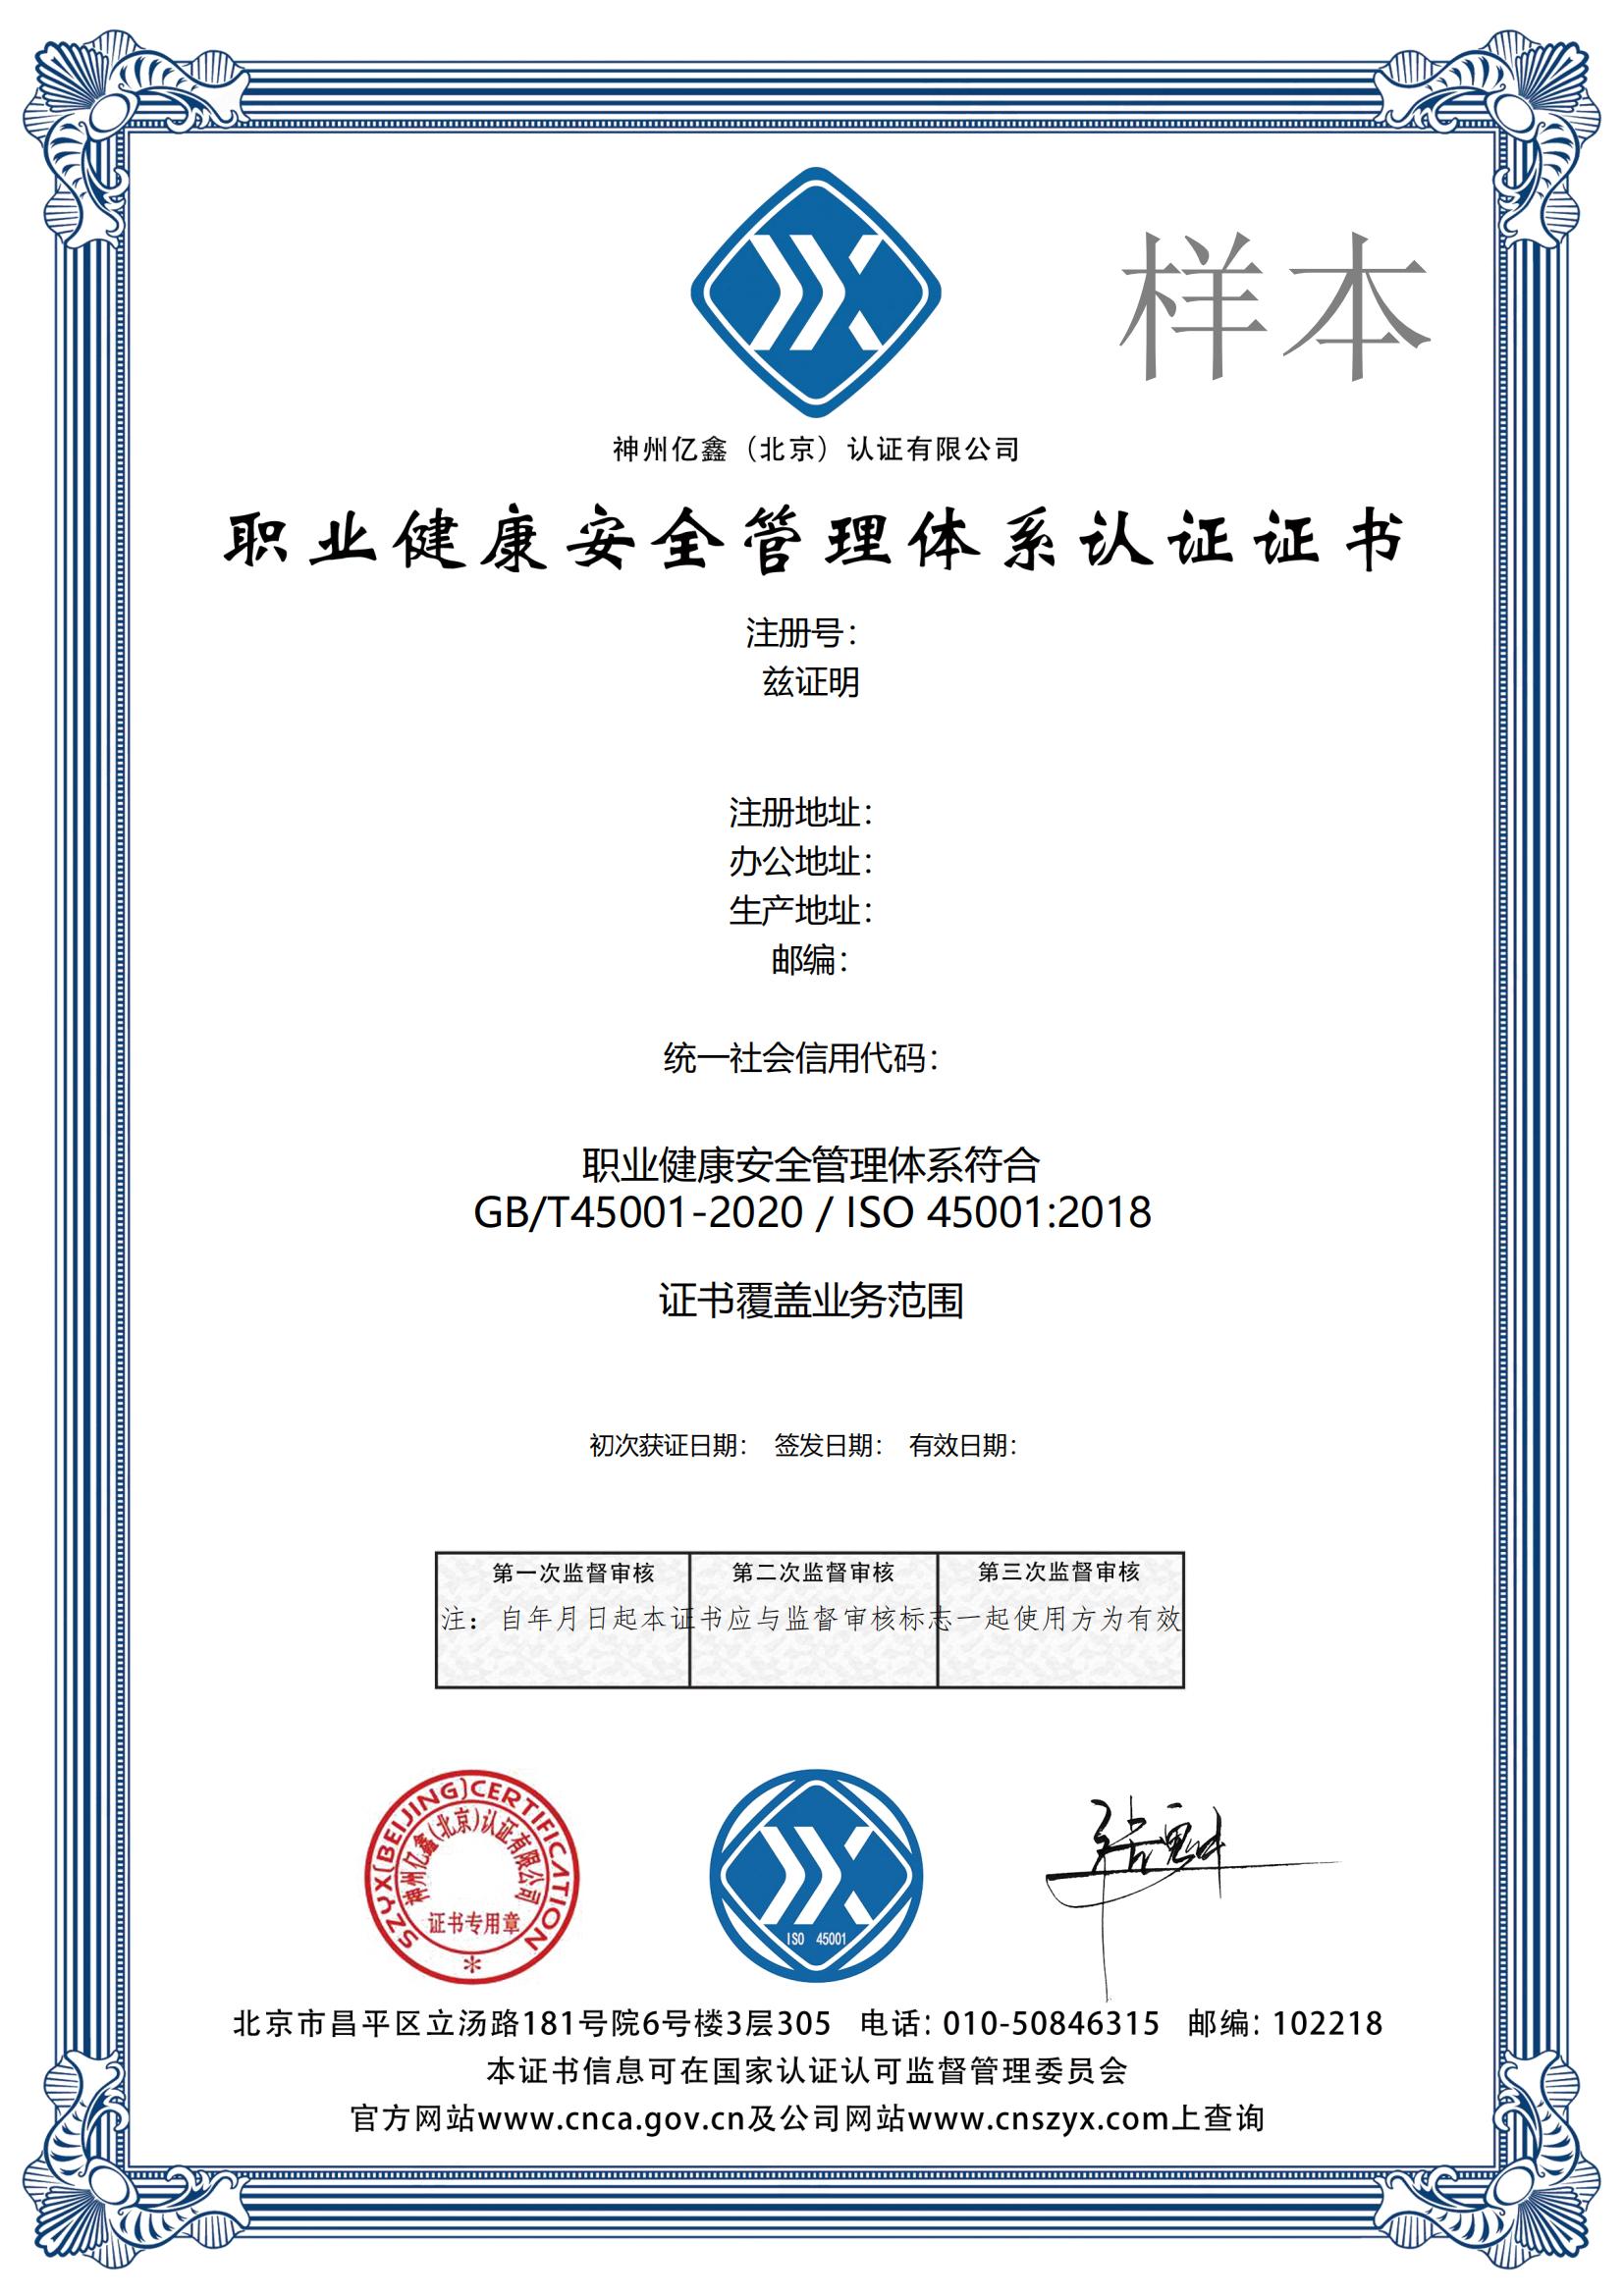 郑州诚信管理体系认证证书申请流程